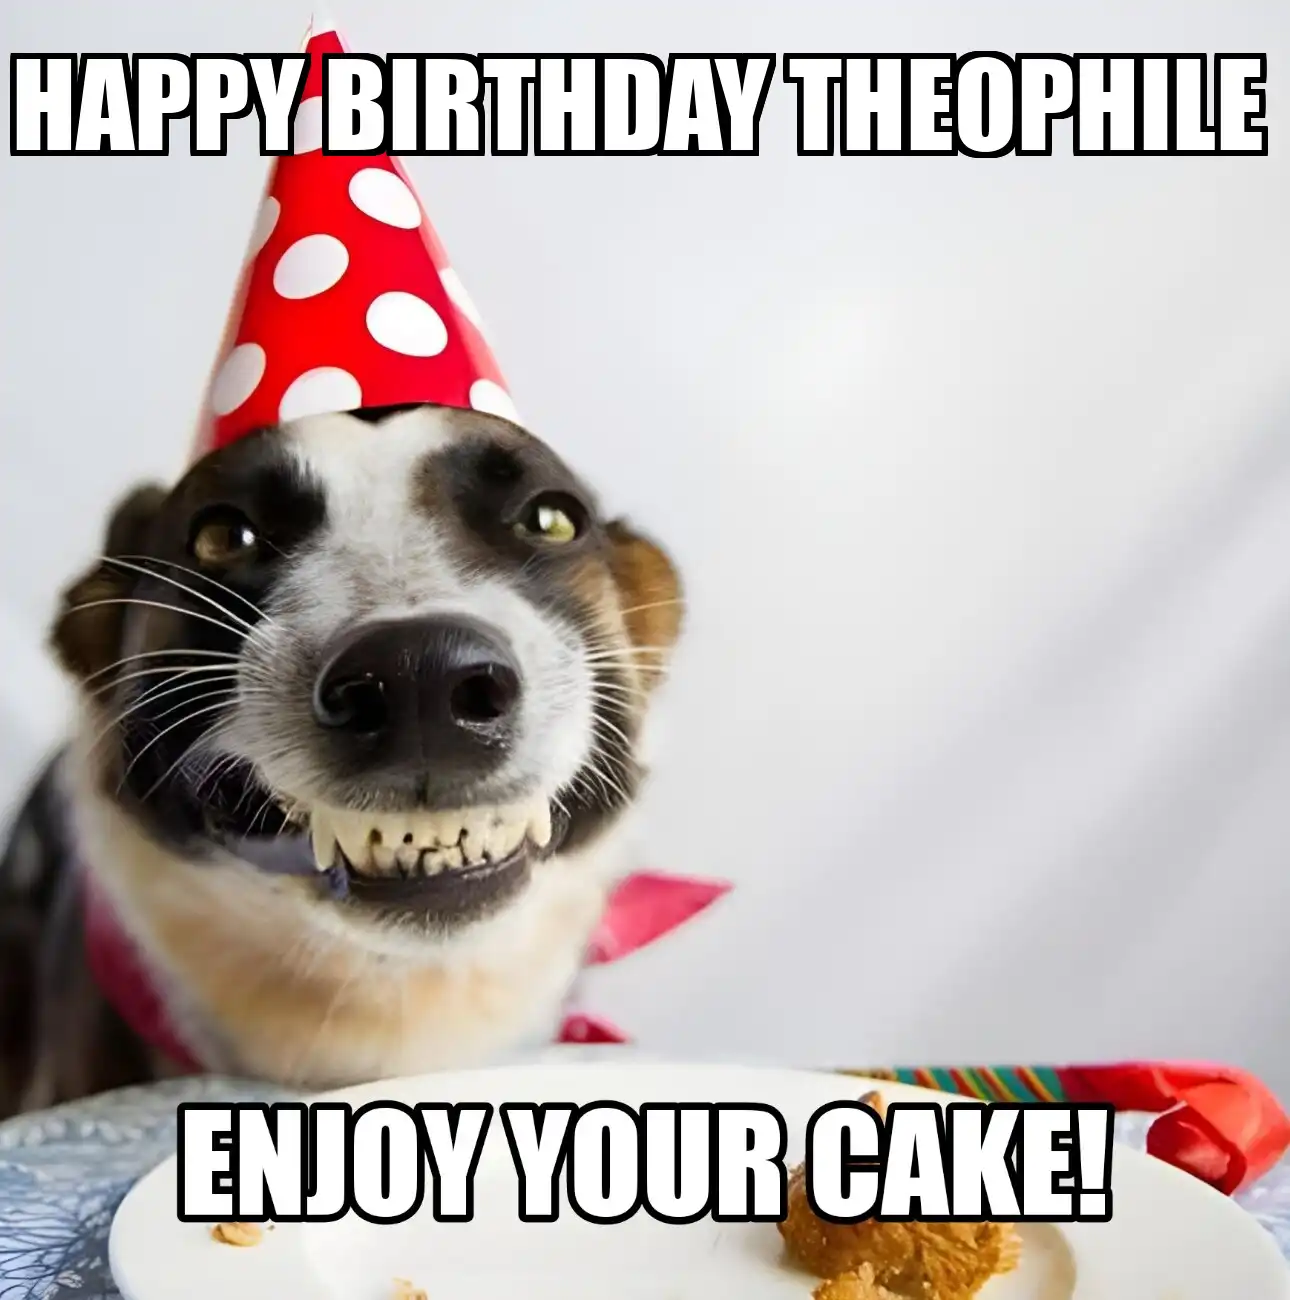 Happy Birthday Theophile Enjoy Your Cake Dog Meme